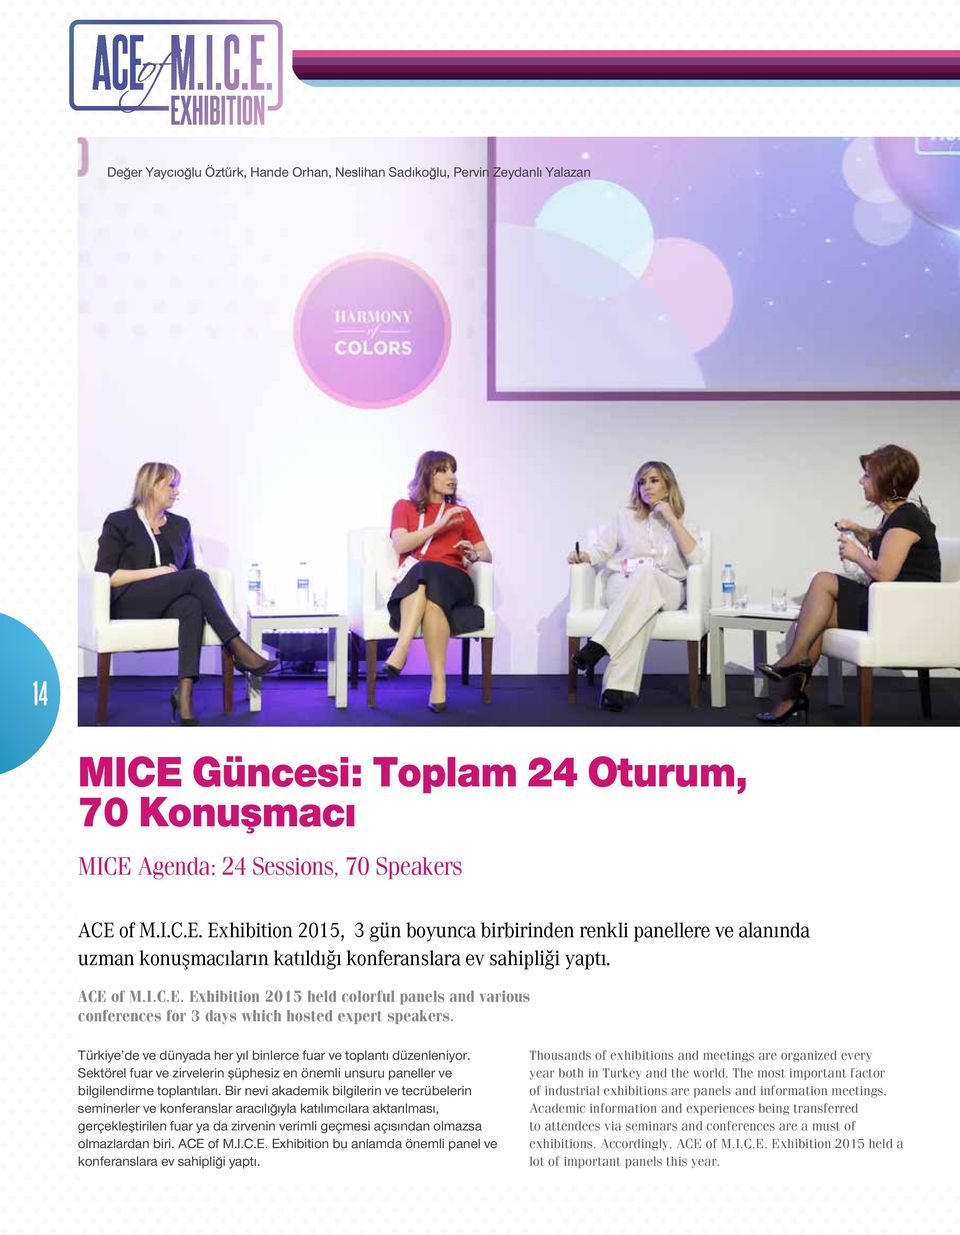 ACE of M.I.C.E. Exhibition 2015 held colorful panels and various conferences for 3 days which hosted expert speakers. Türkiye de ve dünyada her yıl binlerce fuar ve toplantı düzenleniyor.